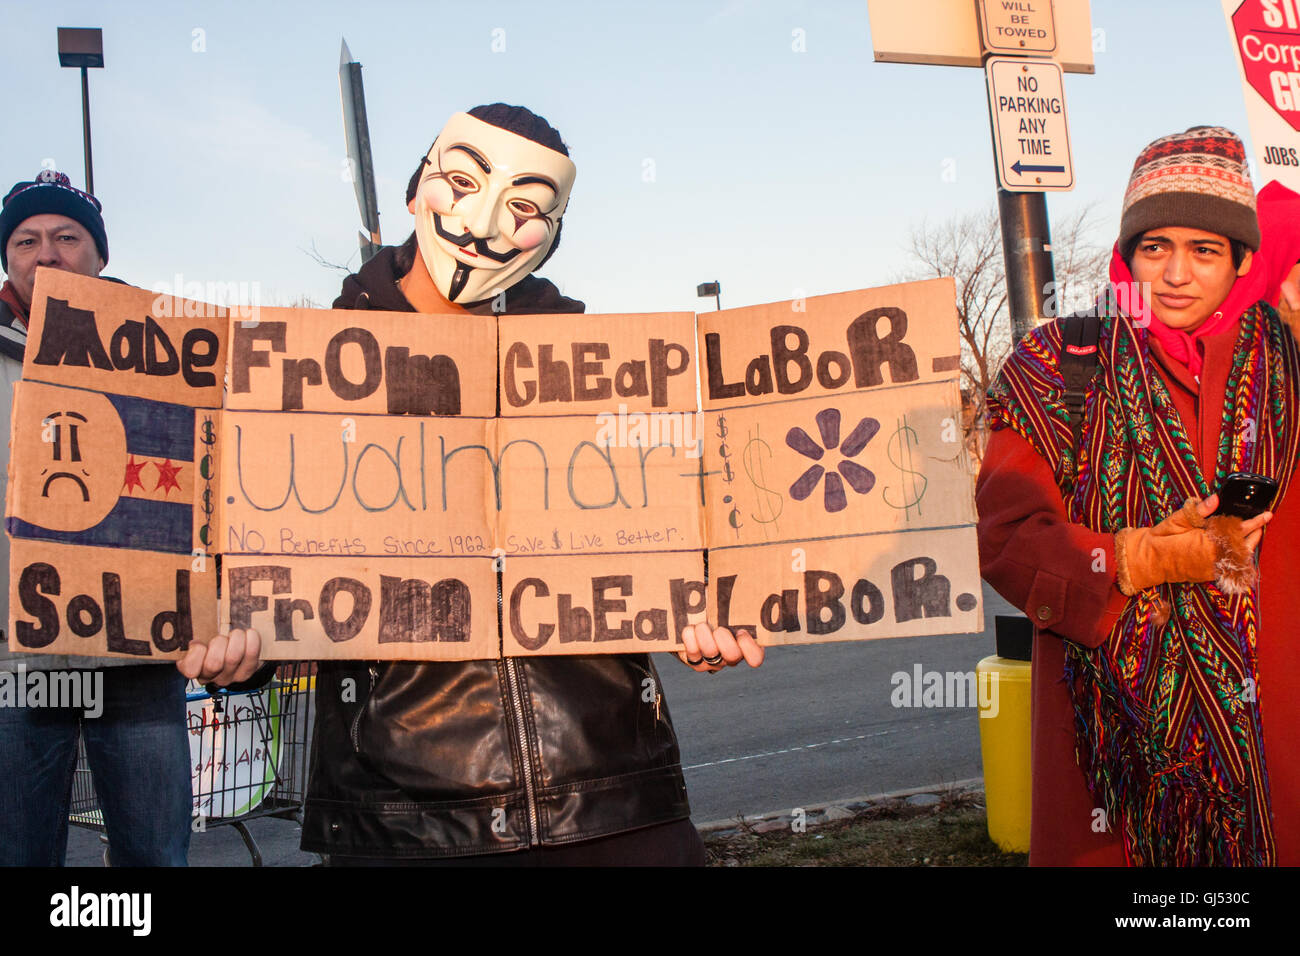 Chicago, Illinois - 29 novembre 2013 : un homme portant un masque anonyme manifestations devant un magasin Walmart à l'appui des grévistes le vendredi noir. Banque D'Images